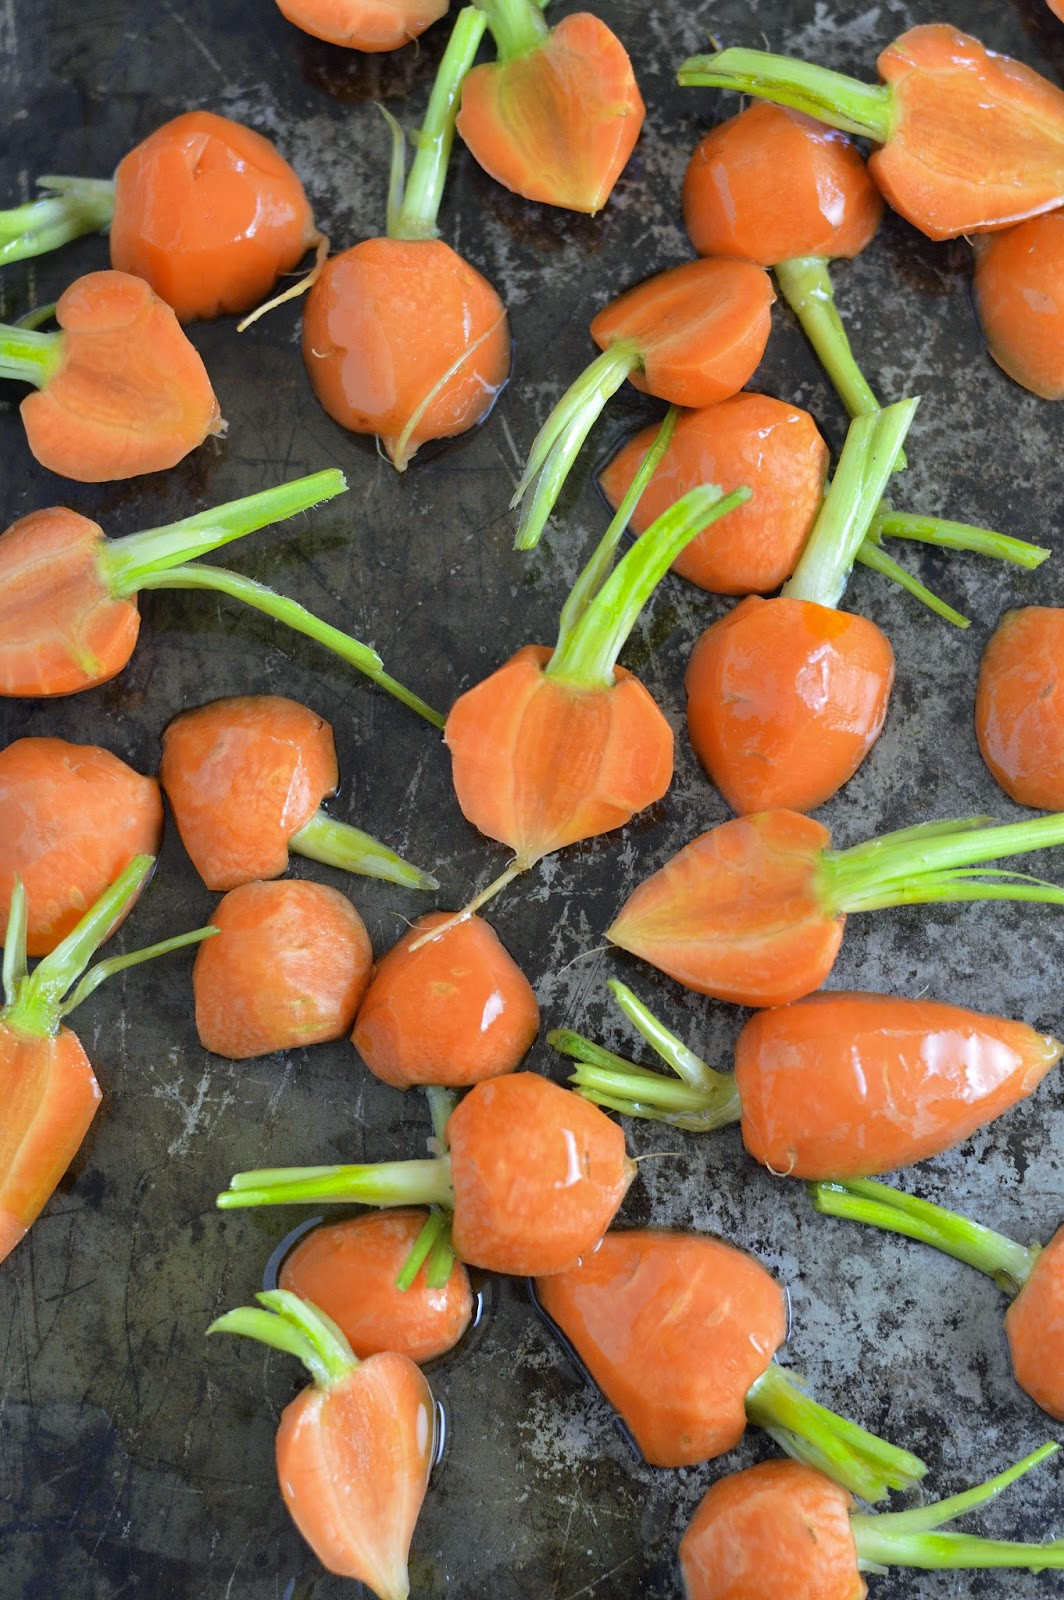 Roasted Baby Carrot Recipes
 Roasted Baby Carrots with a Honey Sriracha Glaze